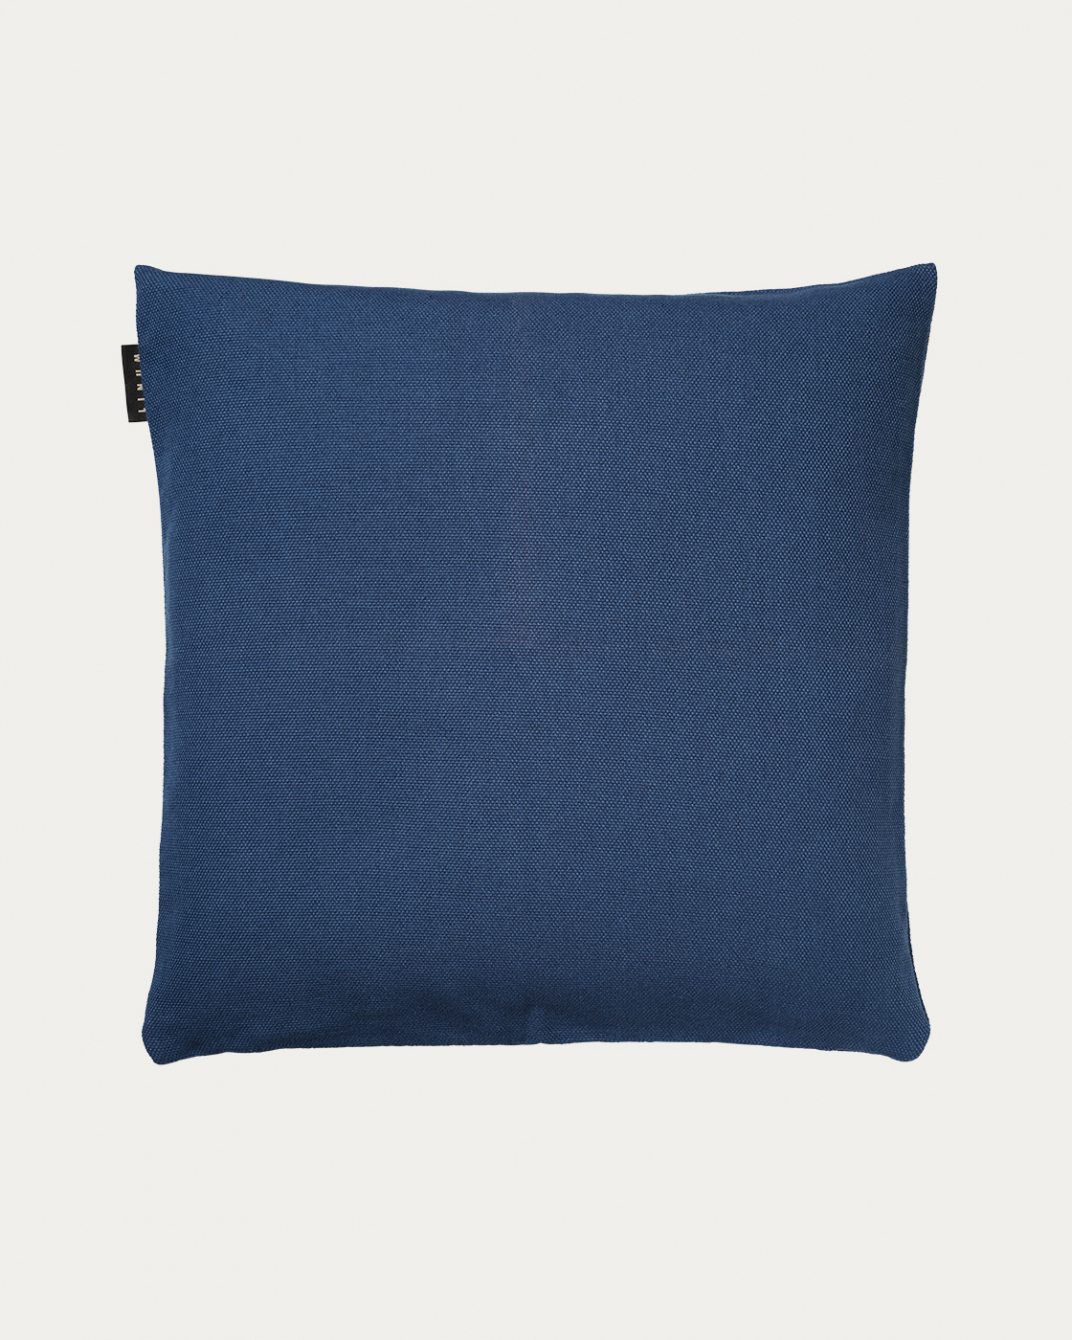 Produktbild indigoblau PEPPER Kissenhülle aus weicher Baumwolle von LINUM DESIGN. Einfach zu waschen und langlebig für Generationen. Größe 50x50 cm.